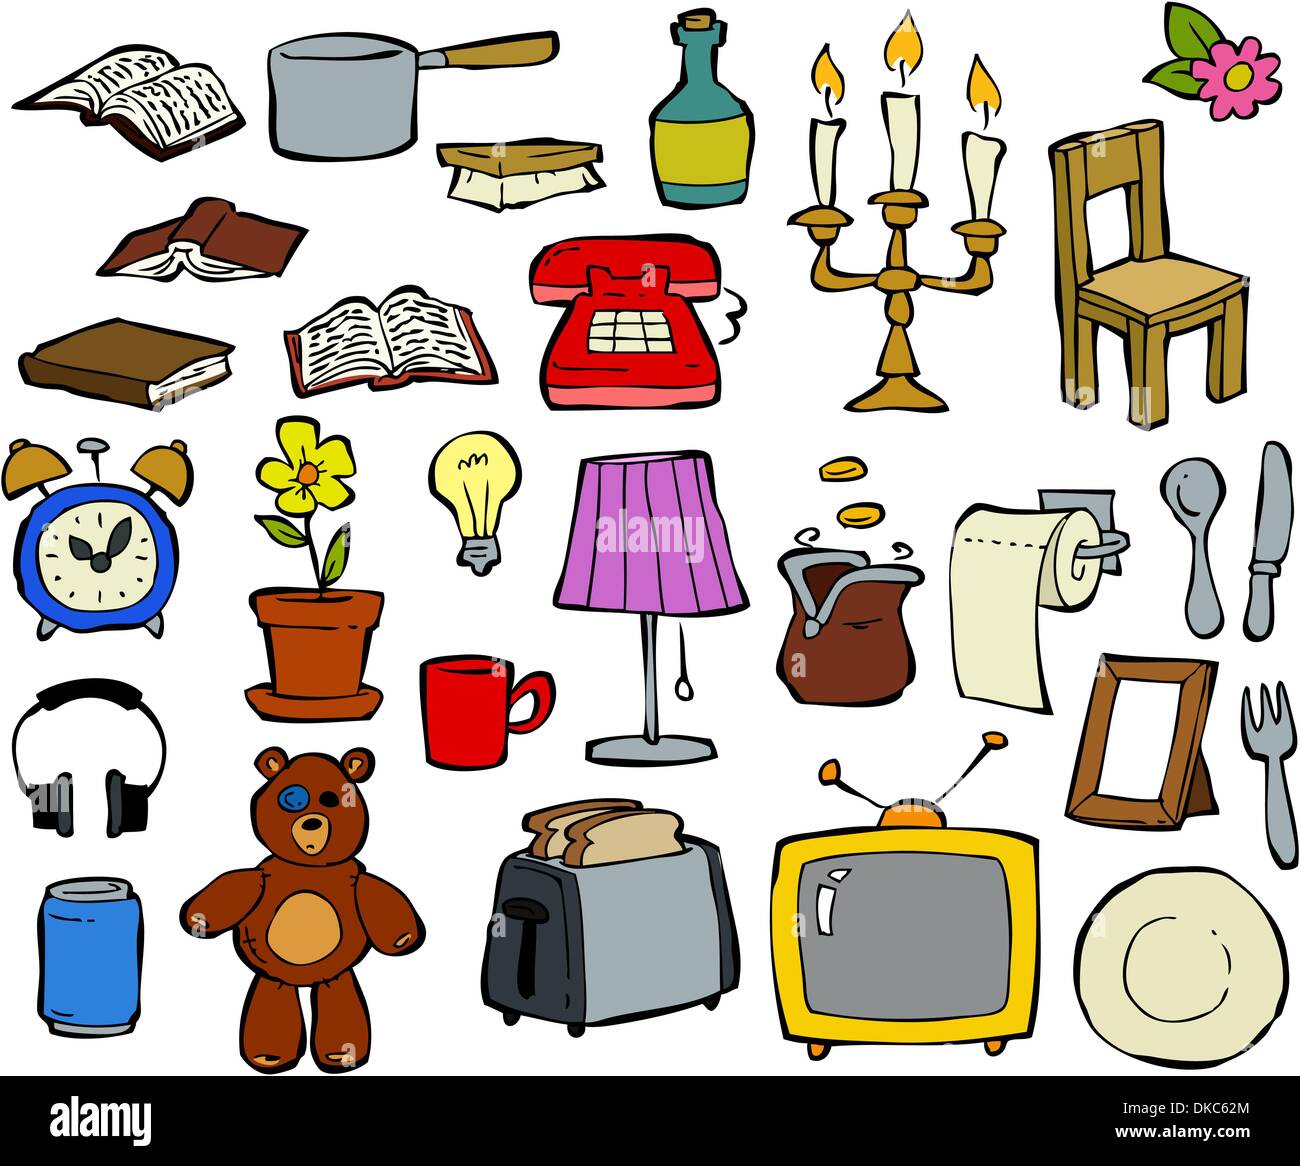 https://c8.alamy.com/comp/DKC62M/household-items-doodle-design-elements-vector-illustration-DKC62M.jpg